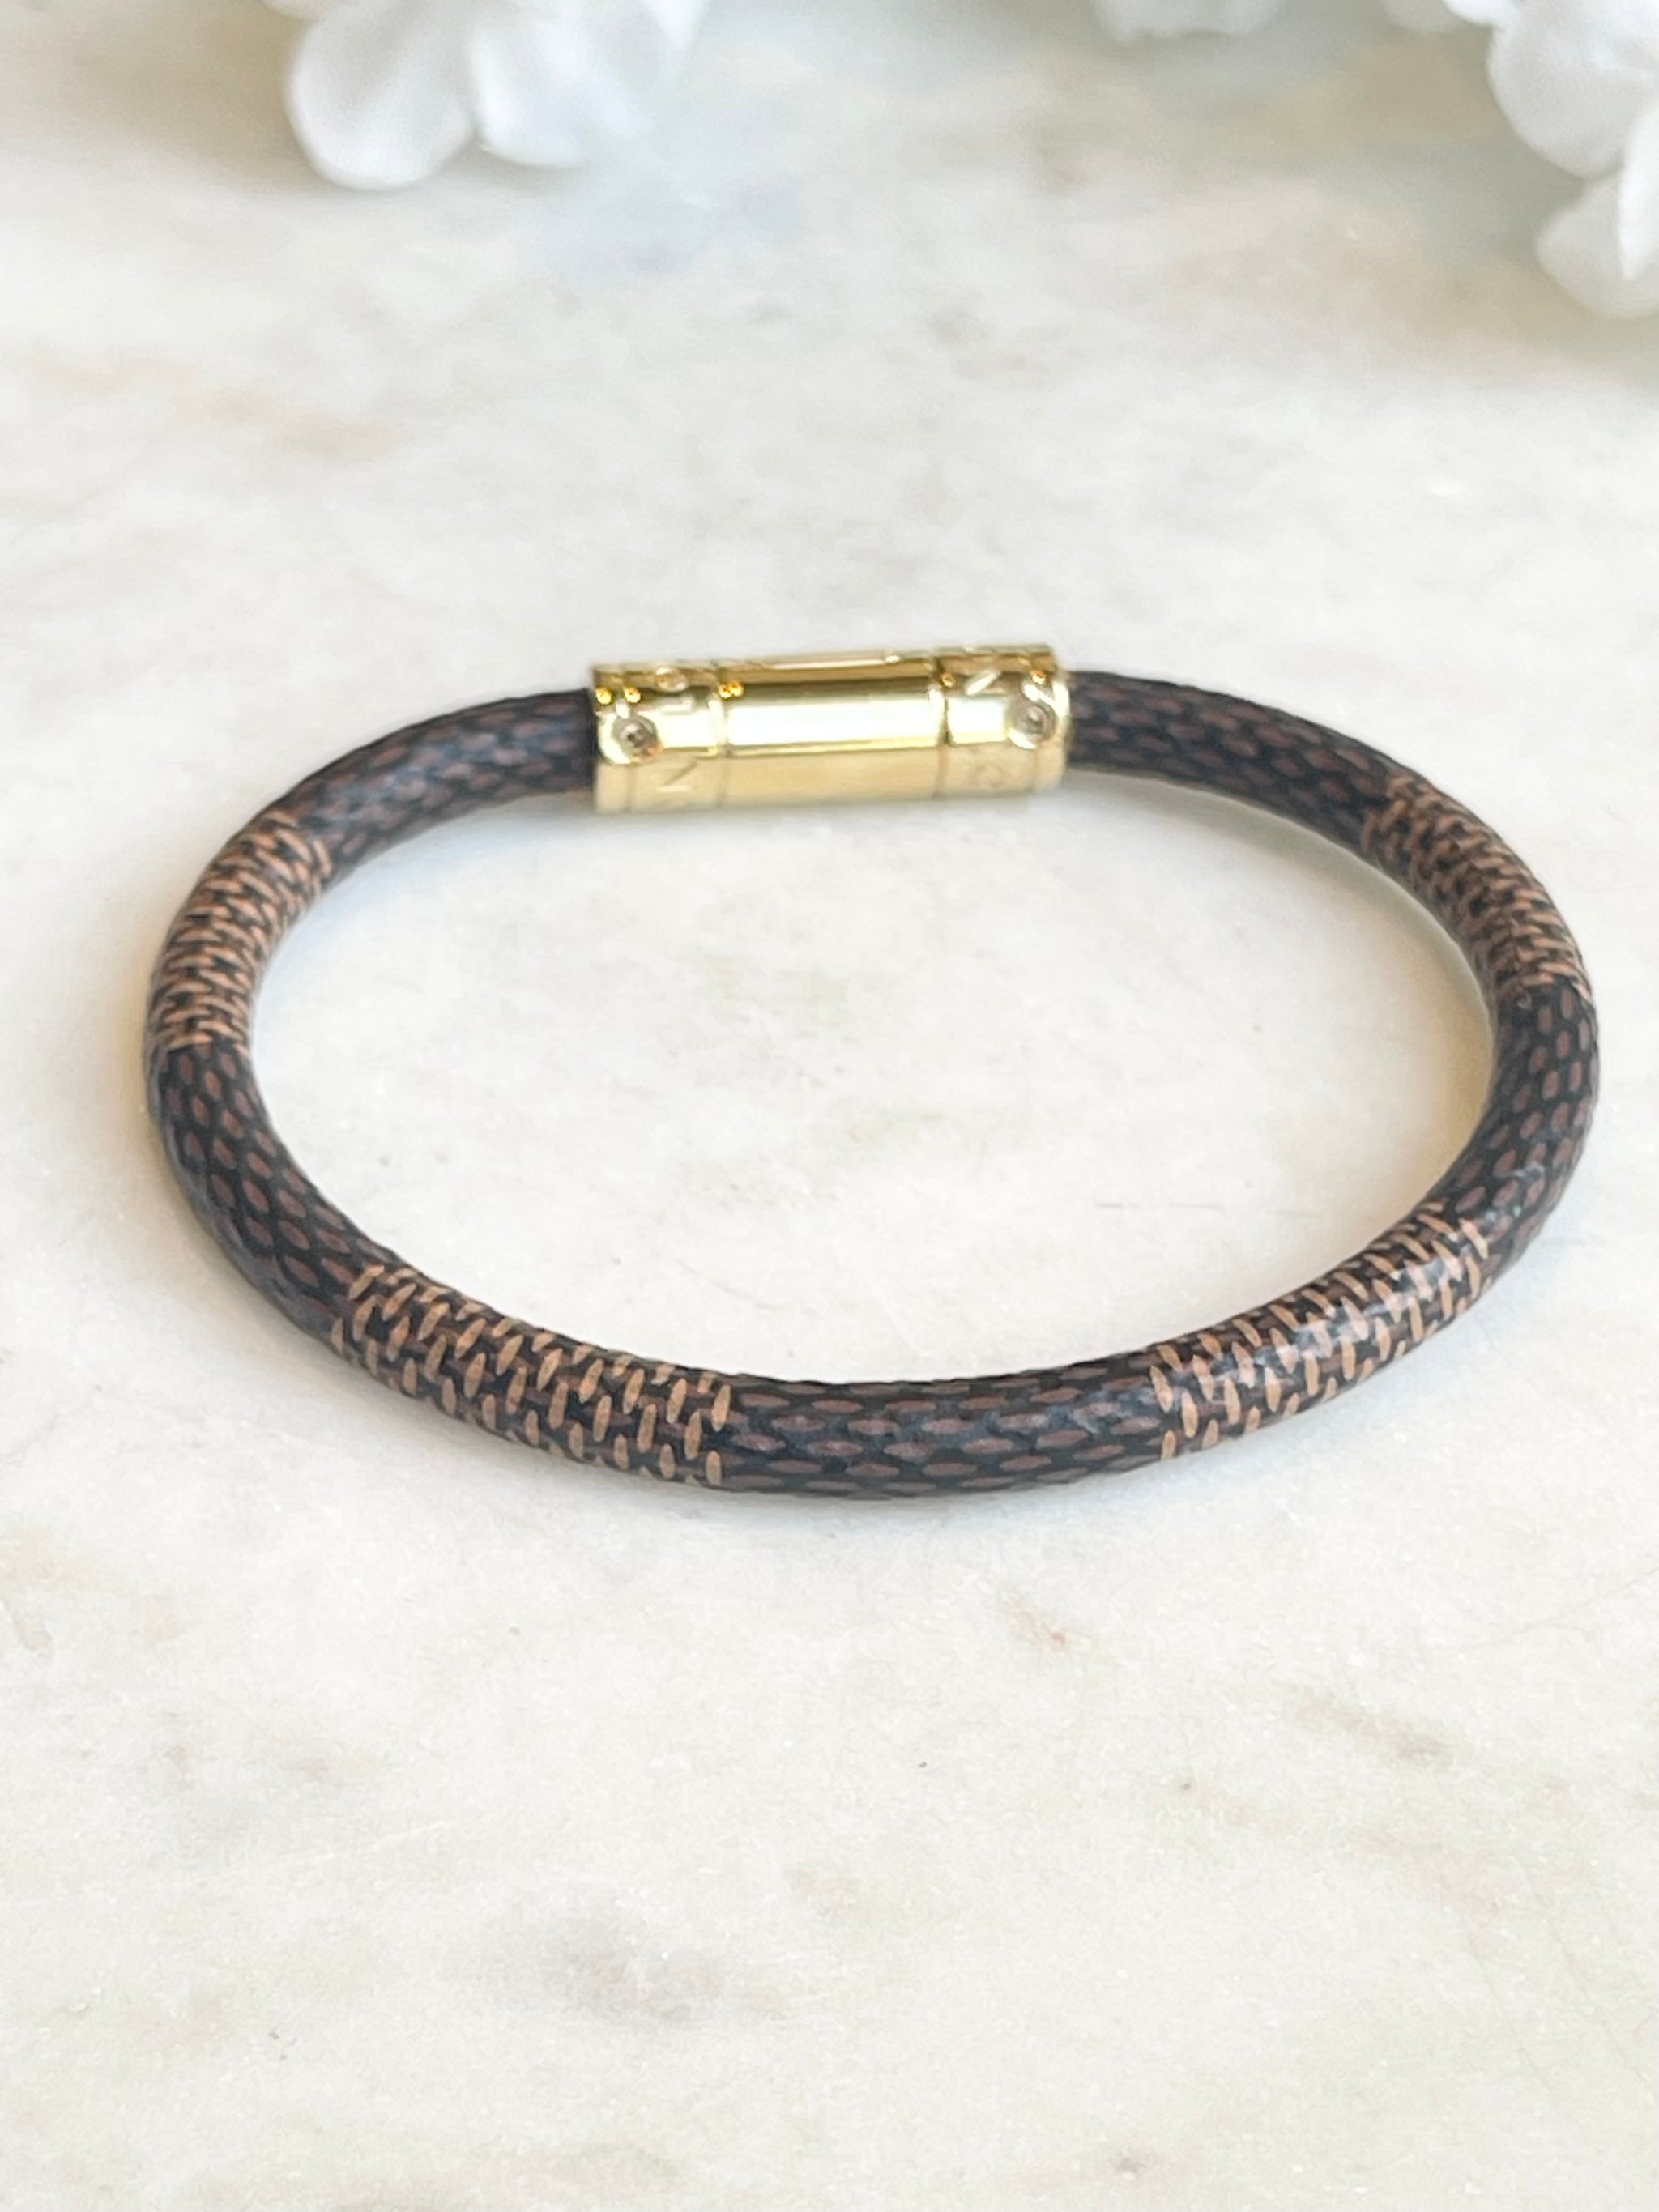 Louis Vuitton Keep It Damier Canvas Bracelet